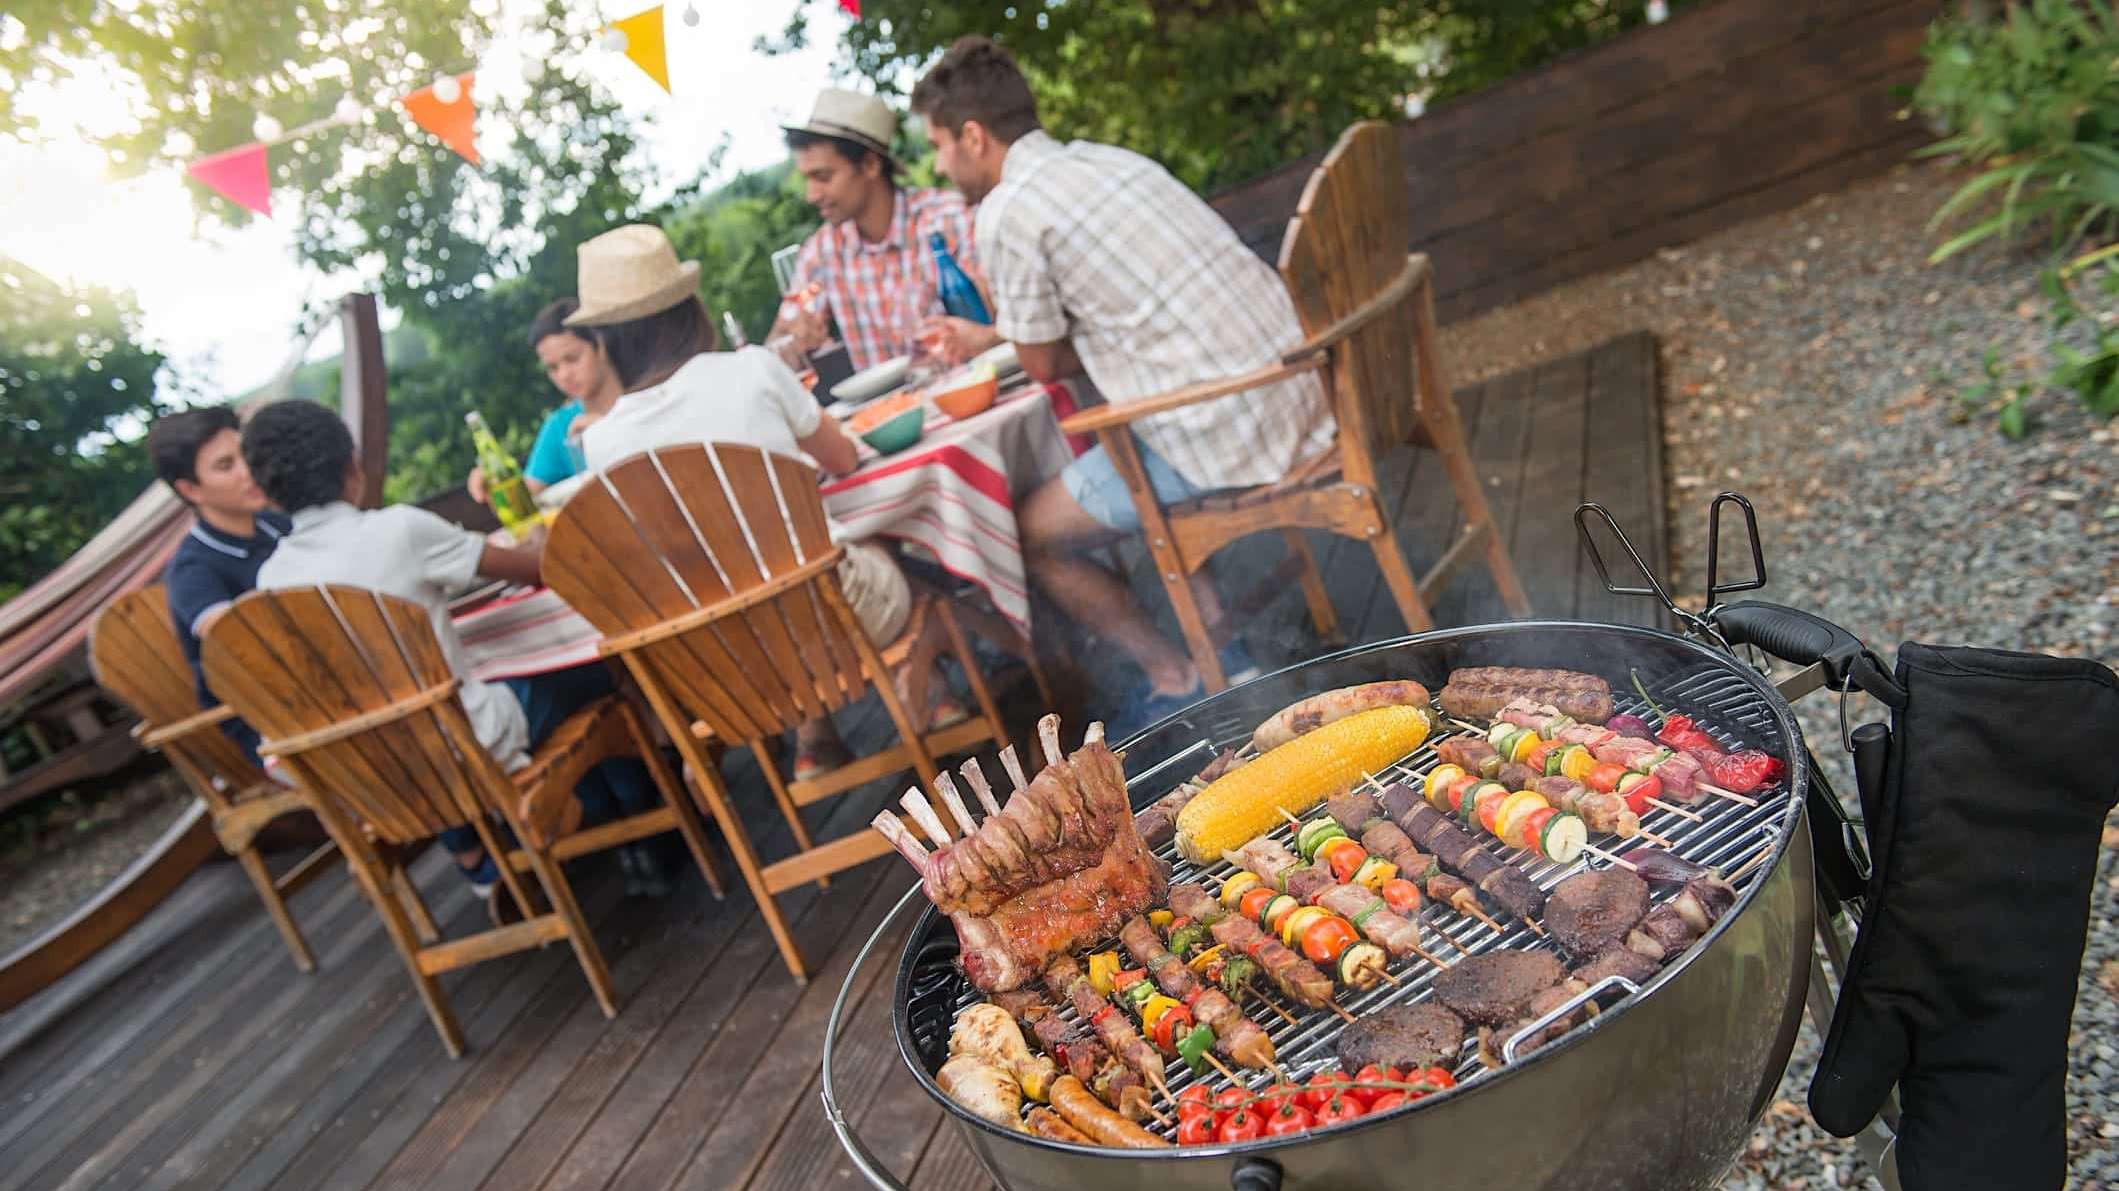 Gros plan sur un BBQ au charbon où grillent des viandes et légumes, avec une famille à table en arrière plan